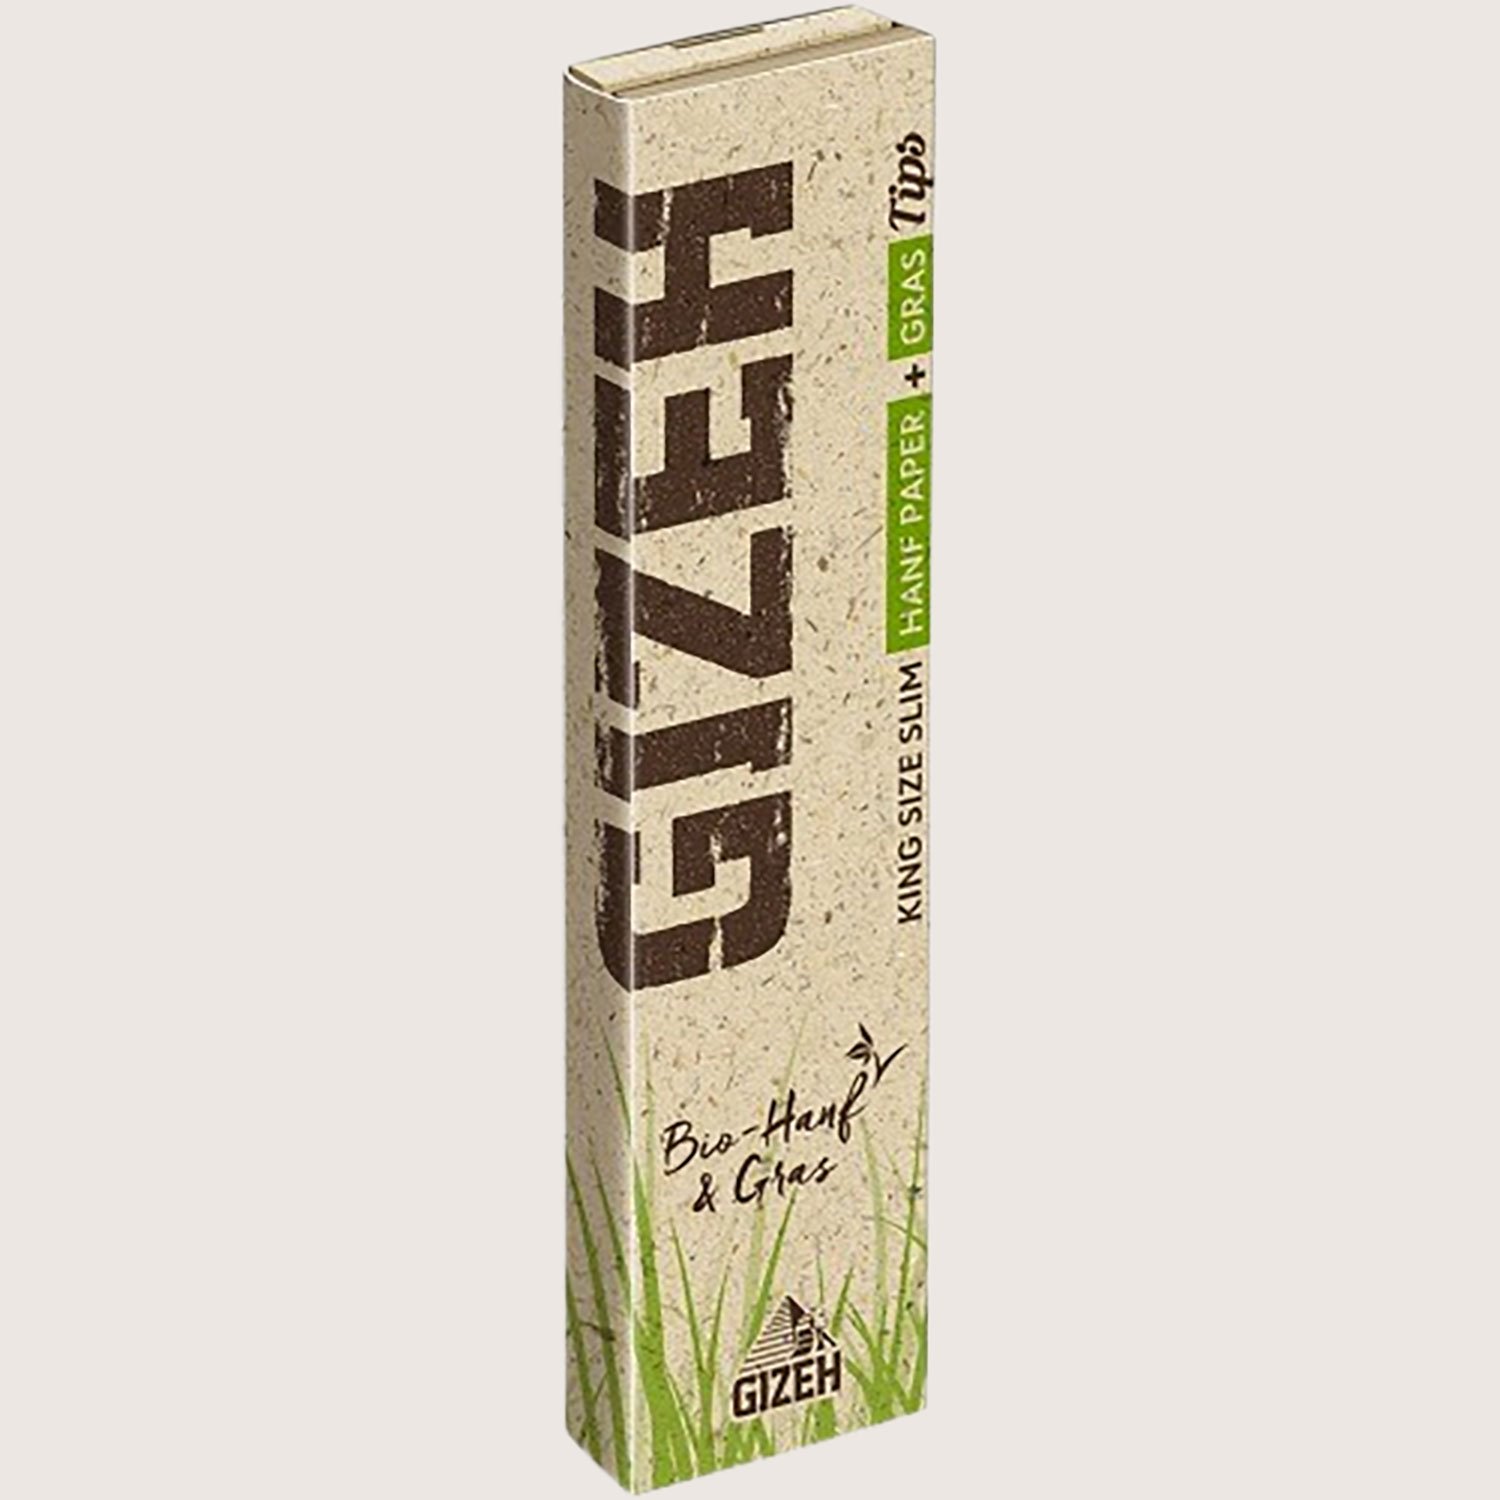 Gizeh Hanf & Gras King Size Slim + Tips 34 Blättchen